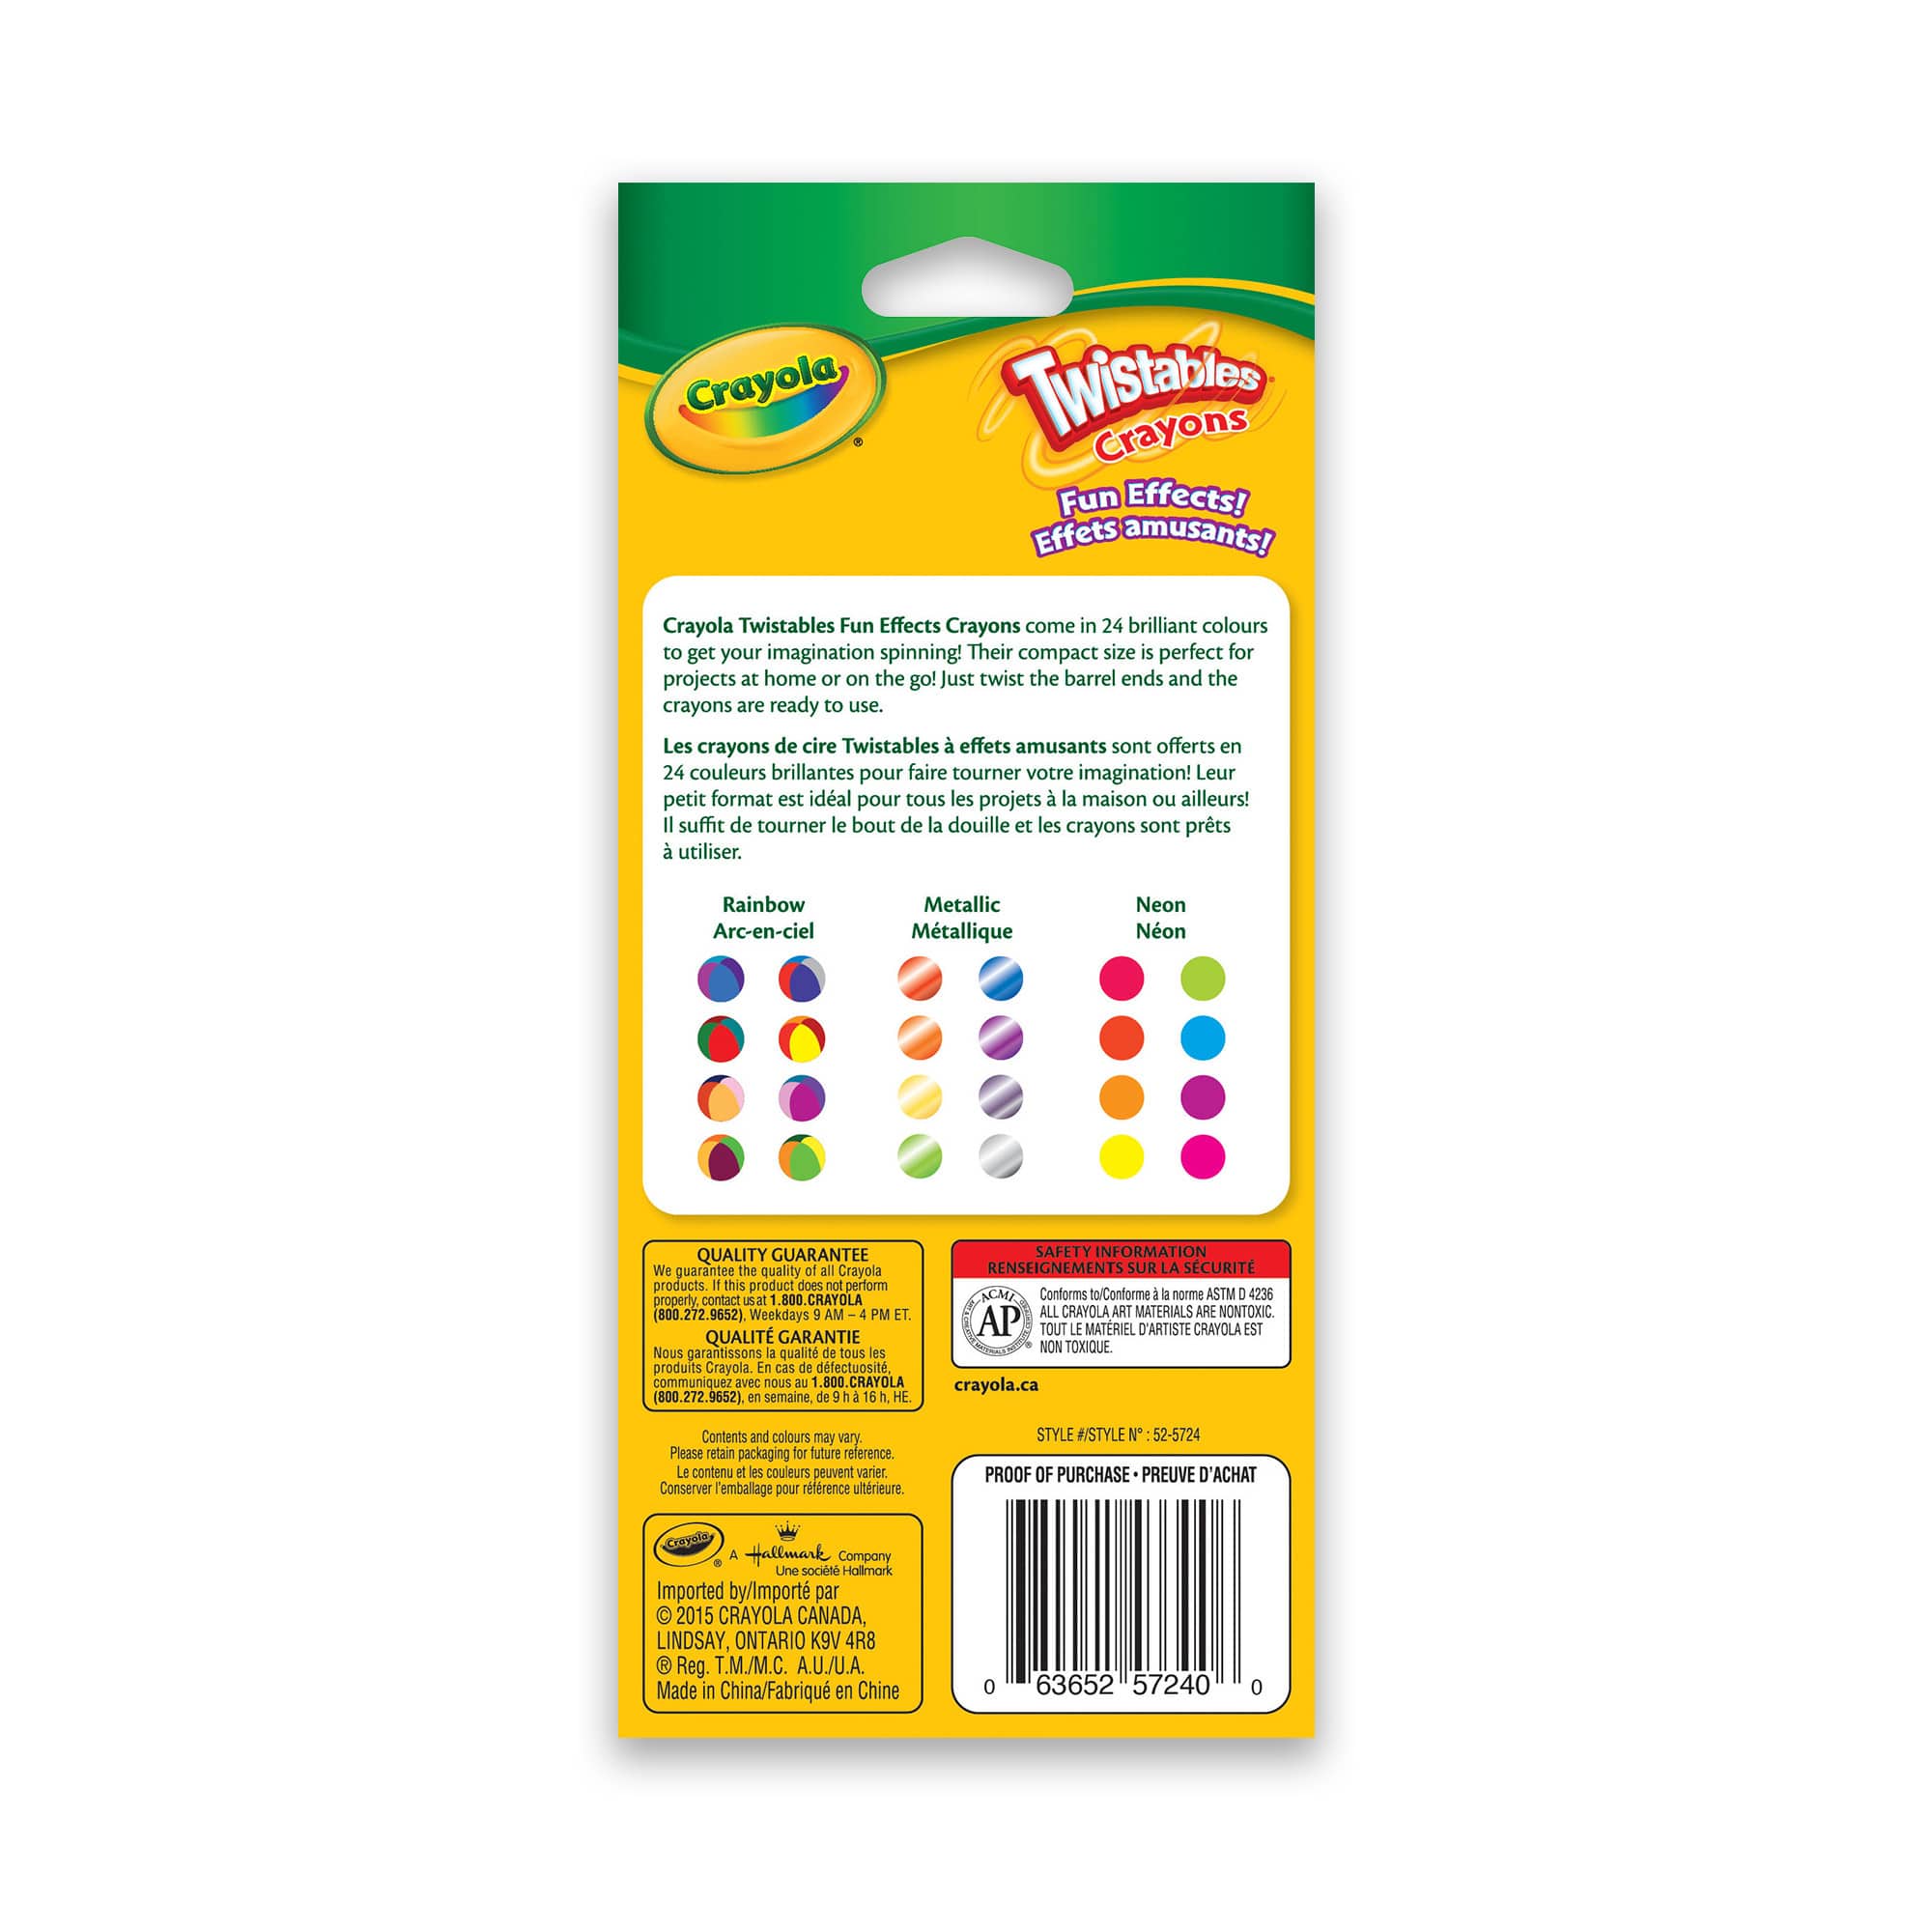 Crayola 24ct Mini Twistables Crayons